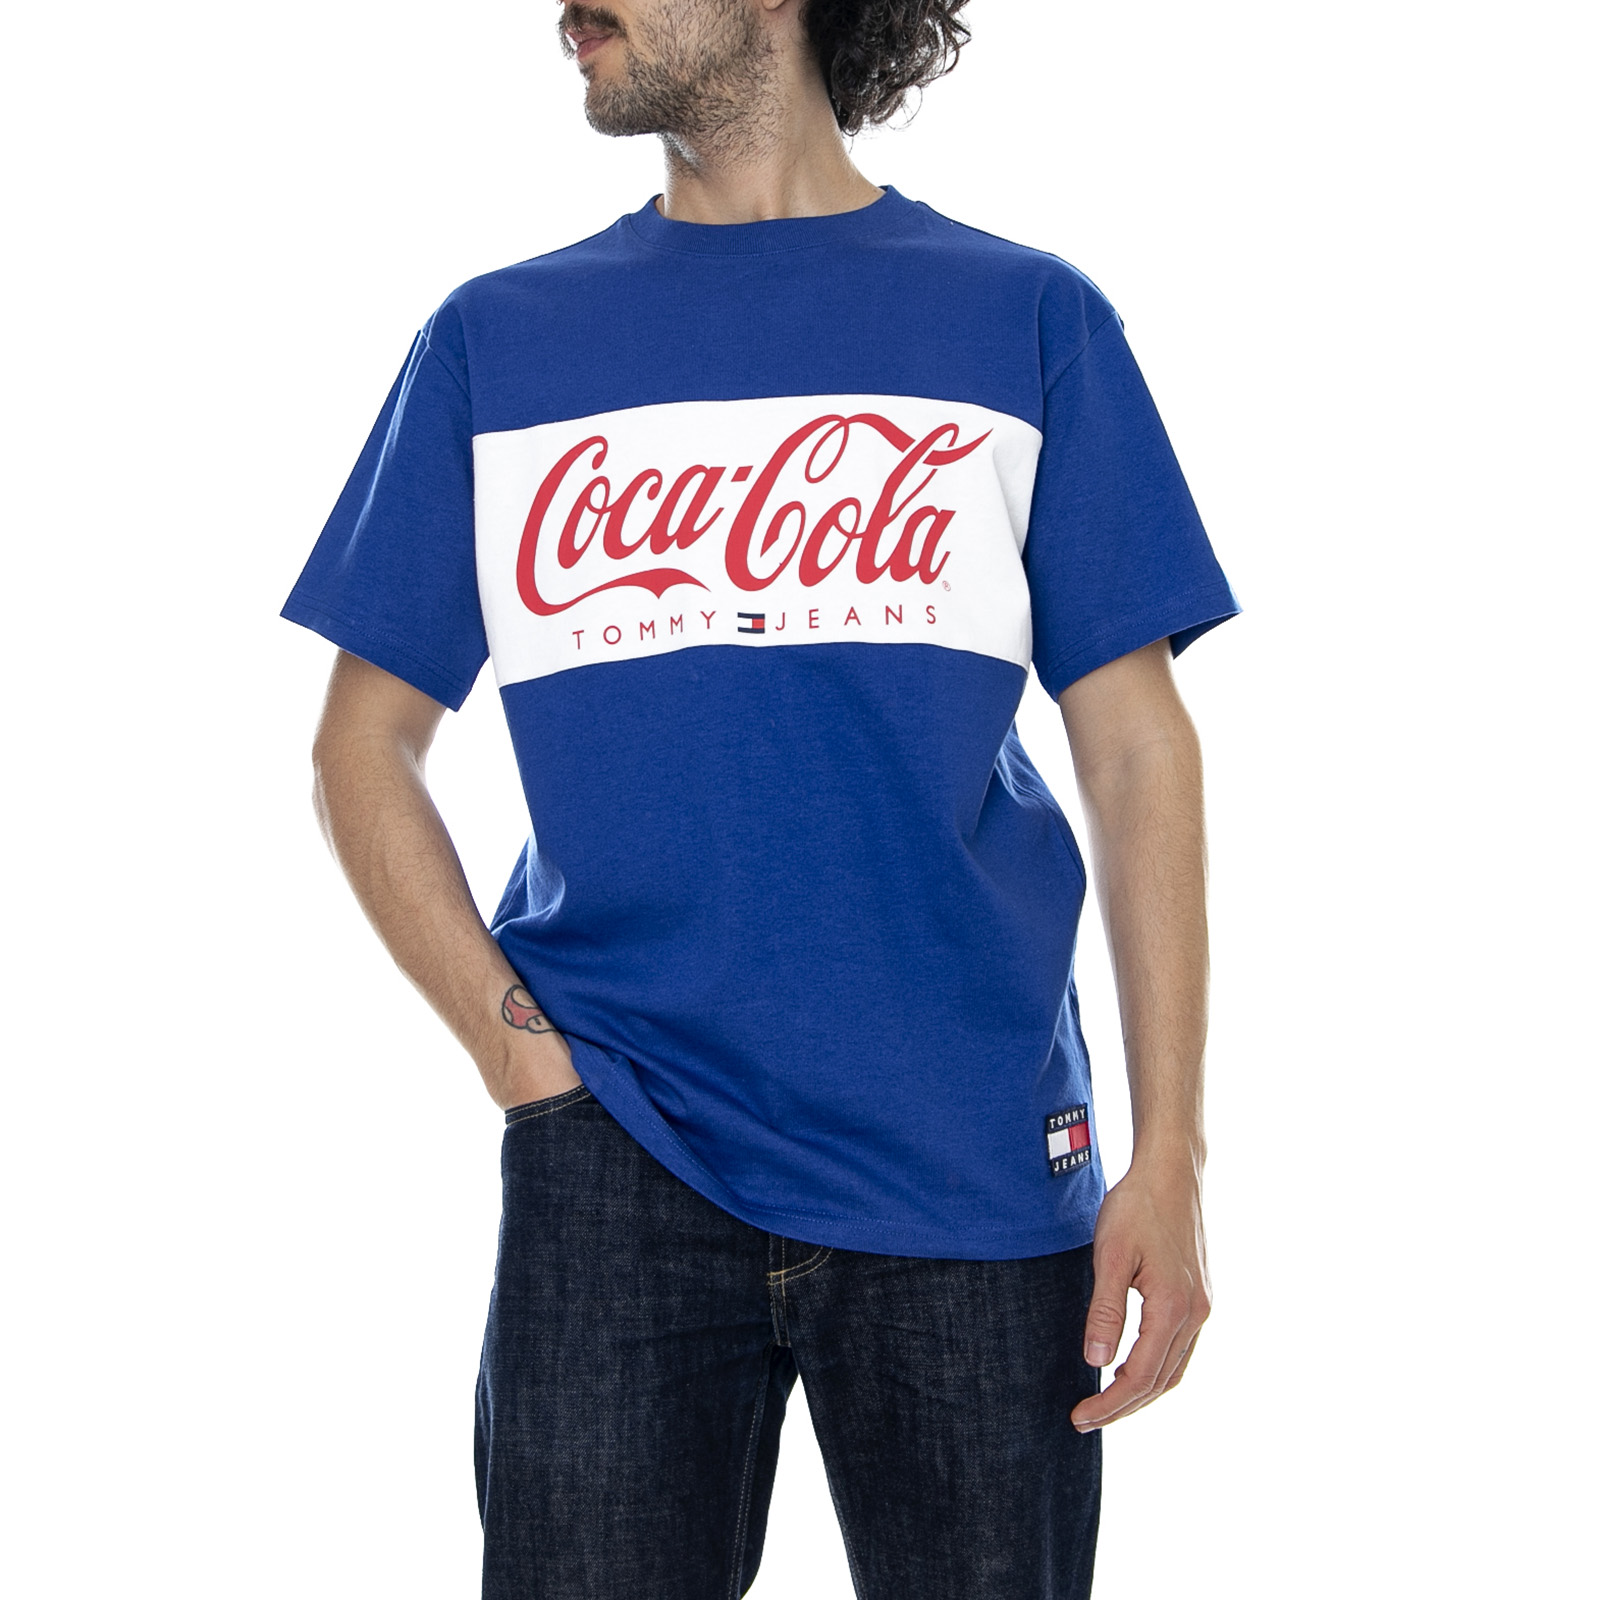 tommy hilfiger t shirt coca cola